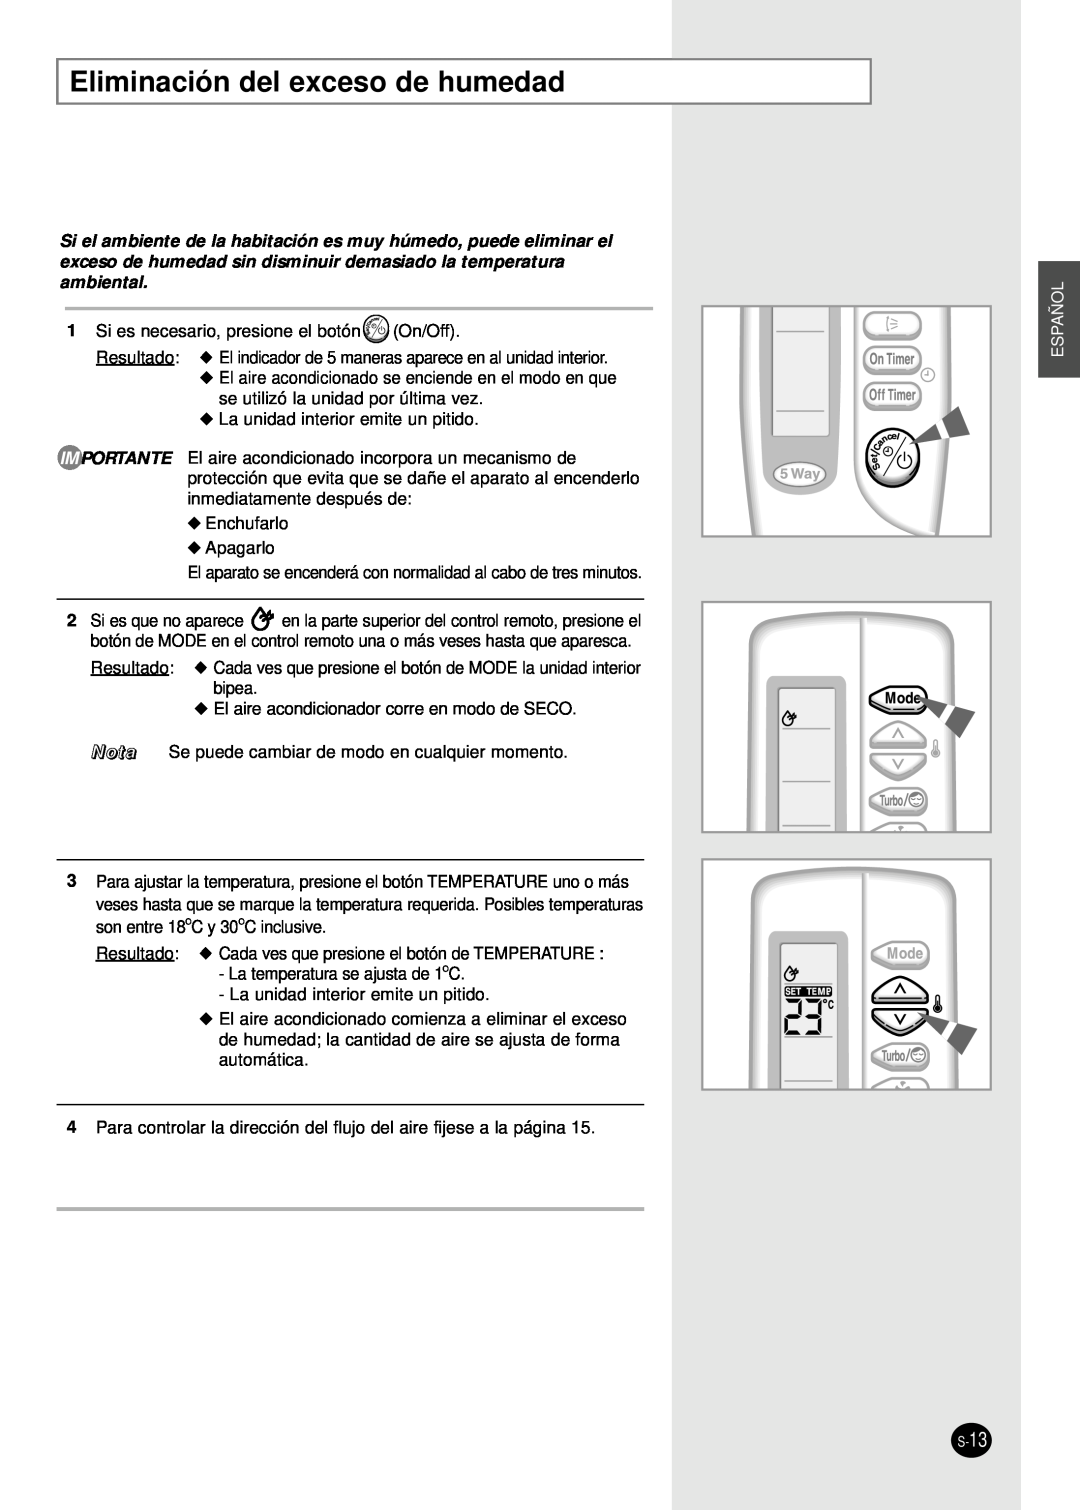 Samsung AM14B1(B2)E07 manuel dutilisation Eliminación del exceso de humedad, Español 